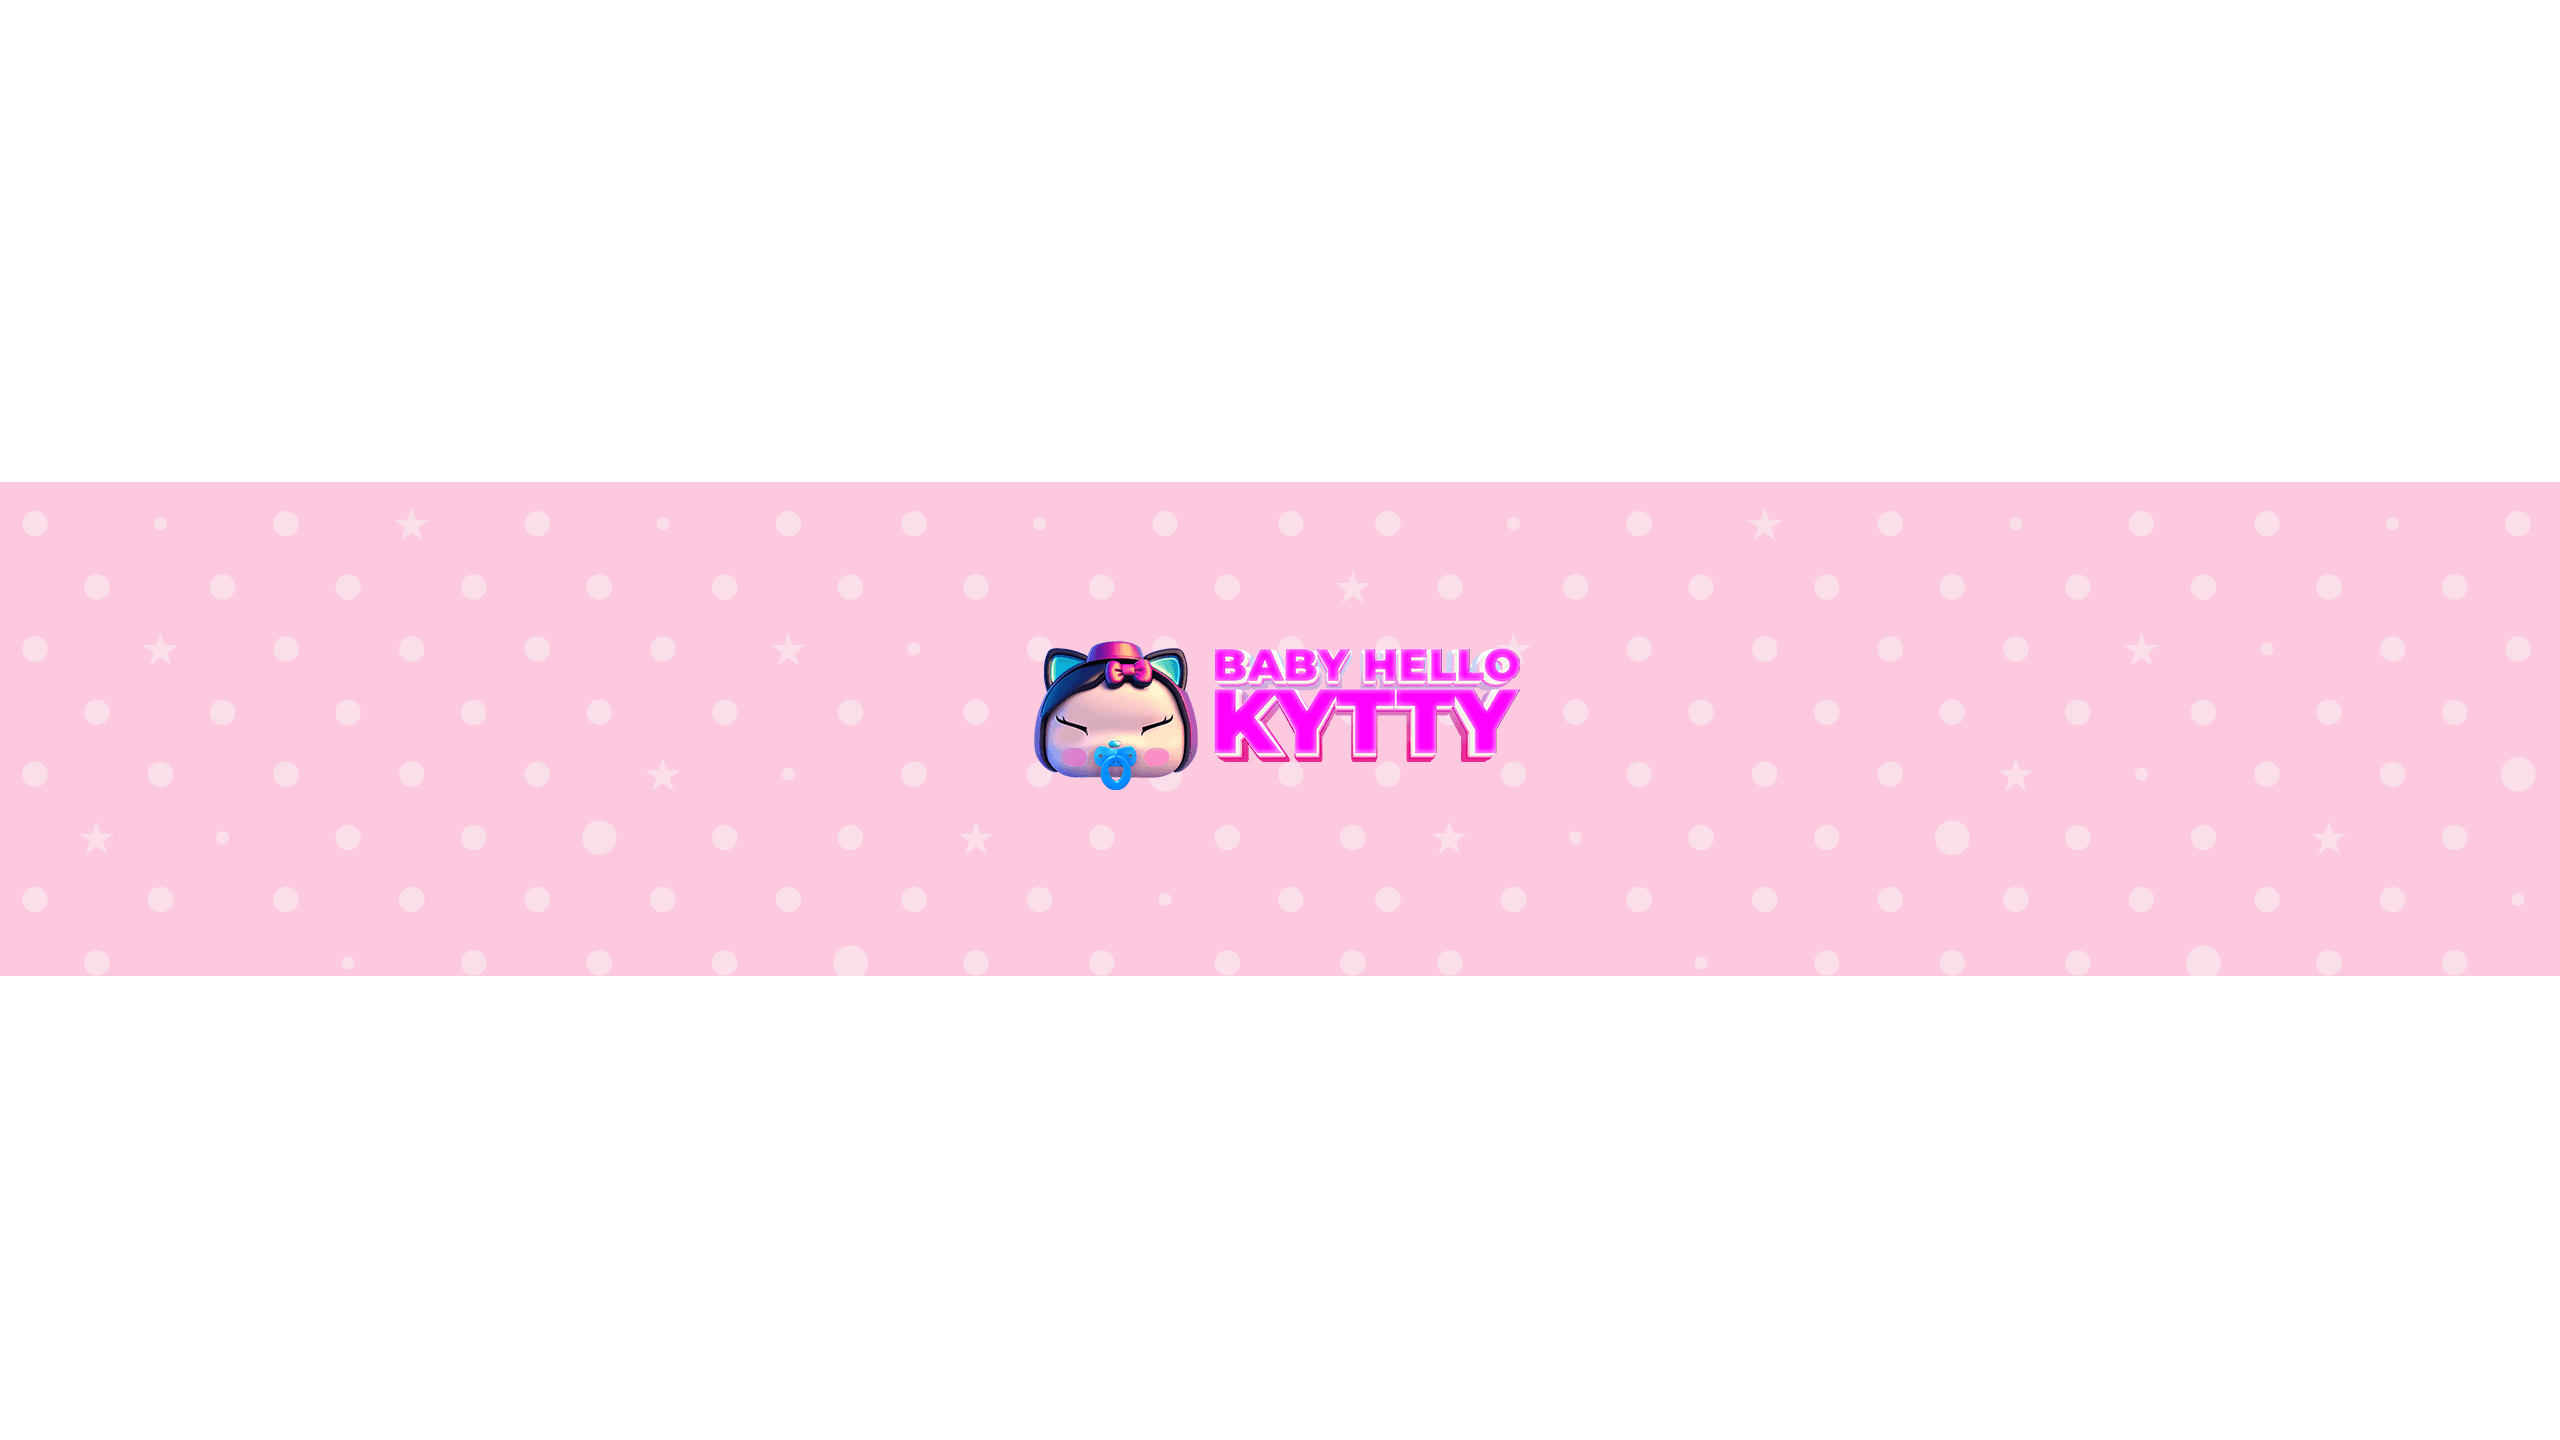 Baby_Hello_Kytty banner